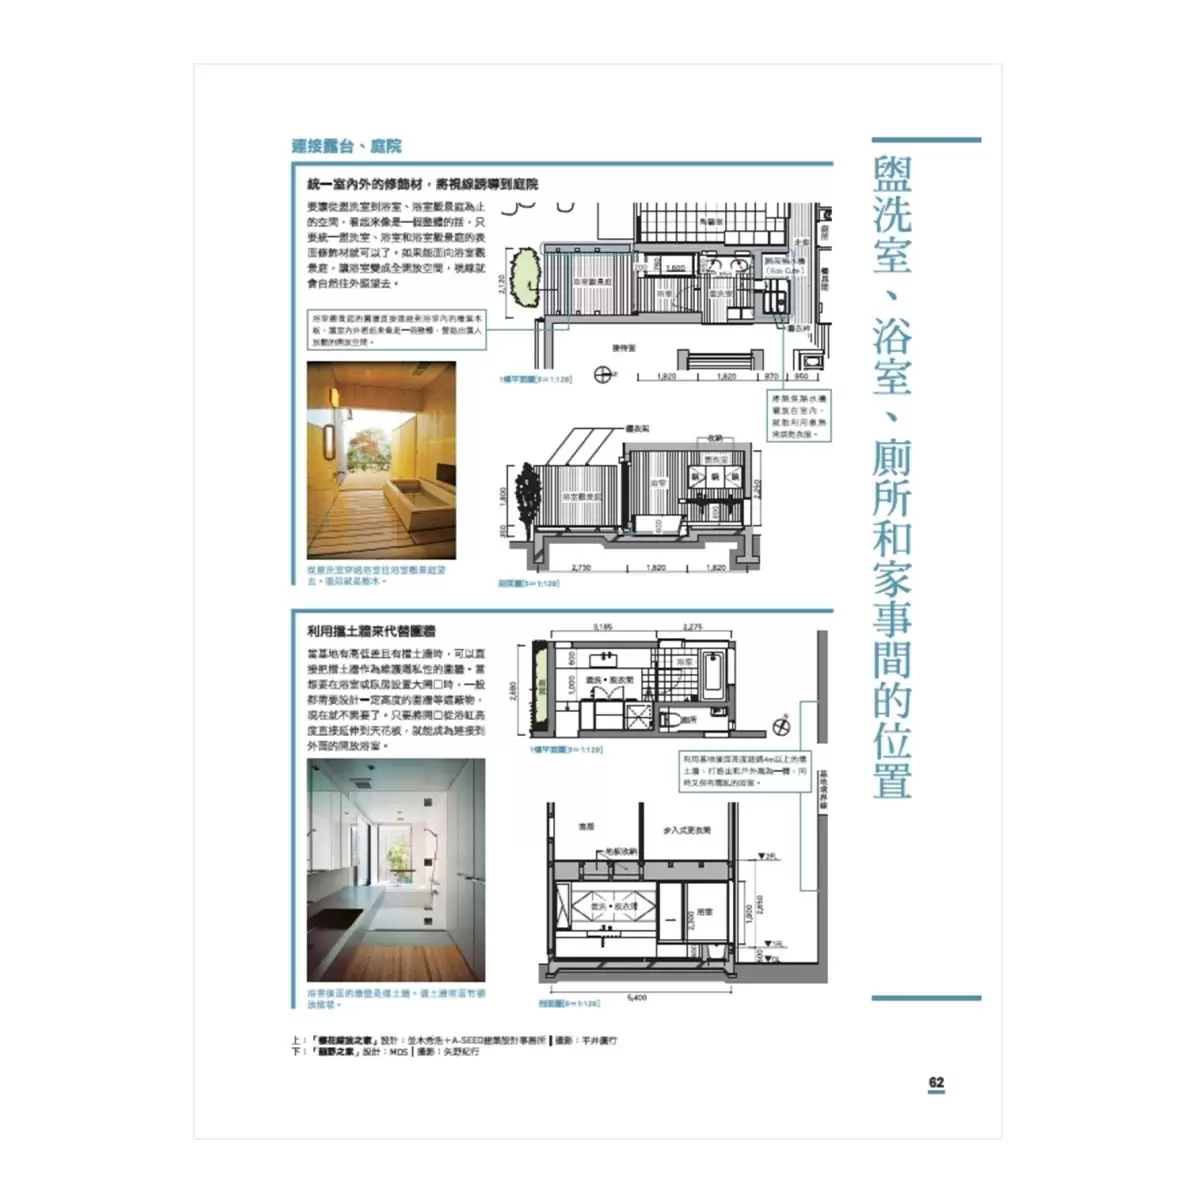 設計師必備！住宅設計黃金比例解剖書【暢銷改版】：細緻美感精準掌握！日本建築師最懂的比例美學、施工細節、關鍵思考